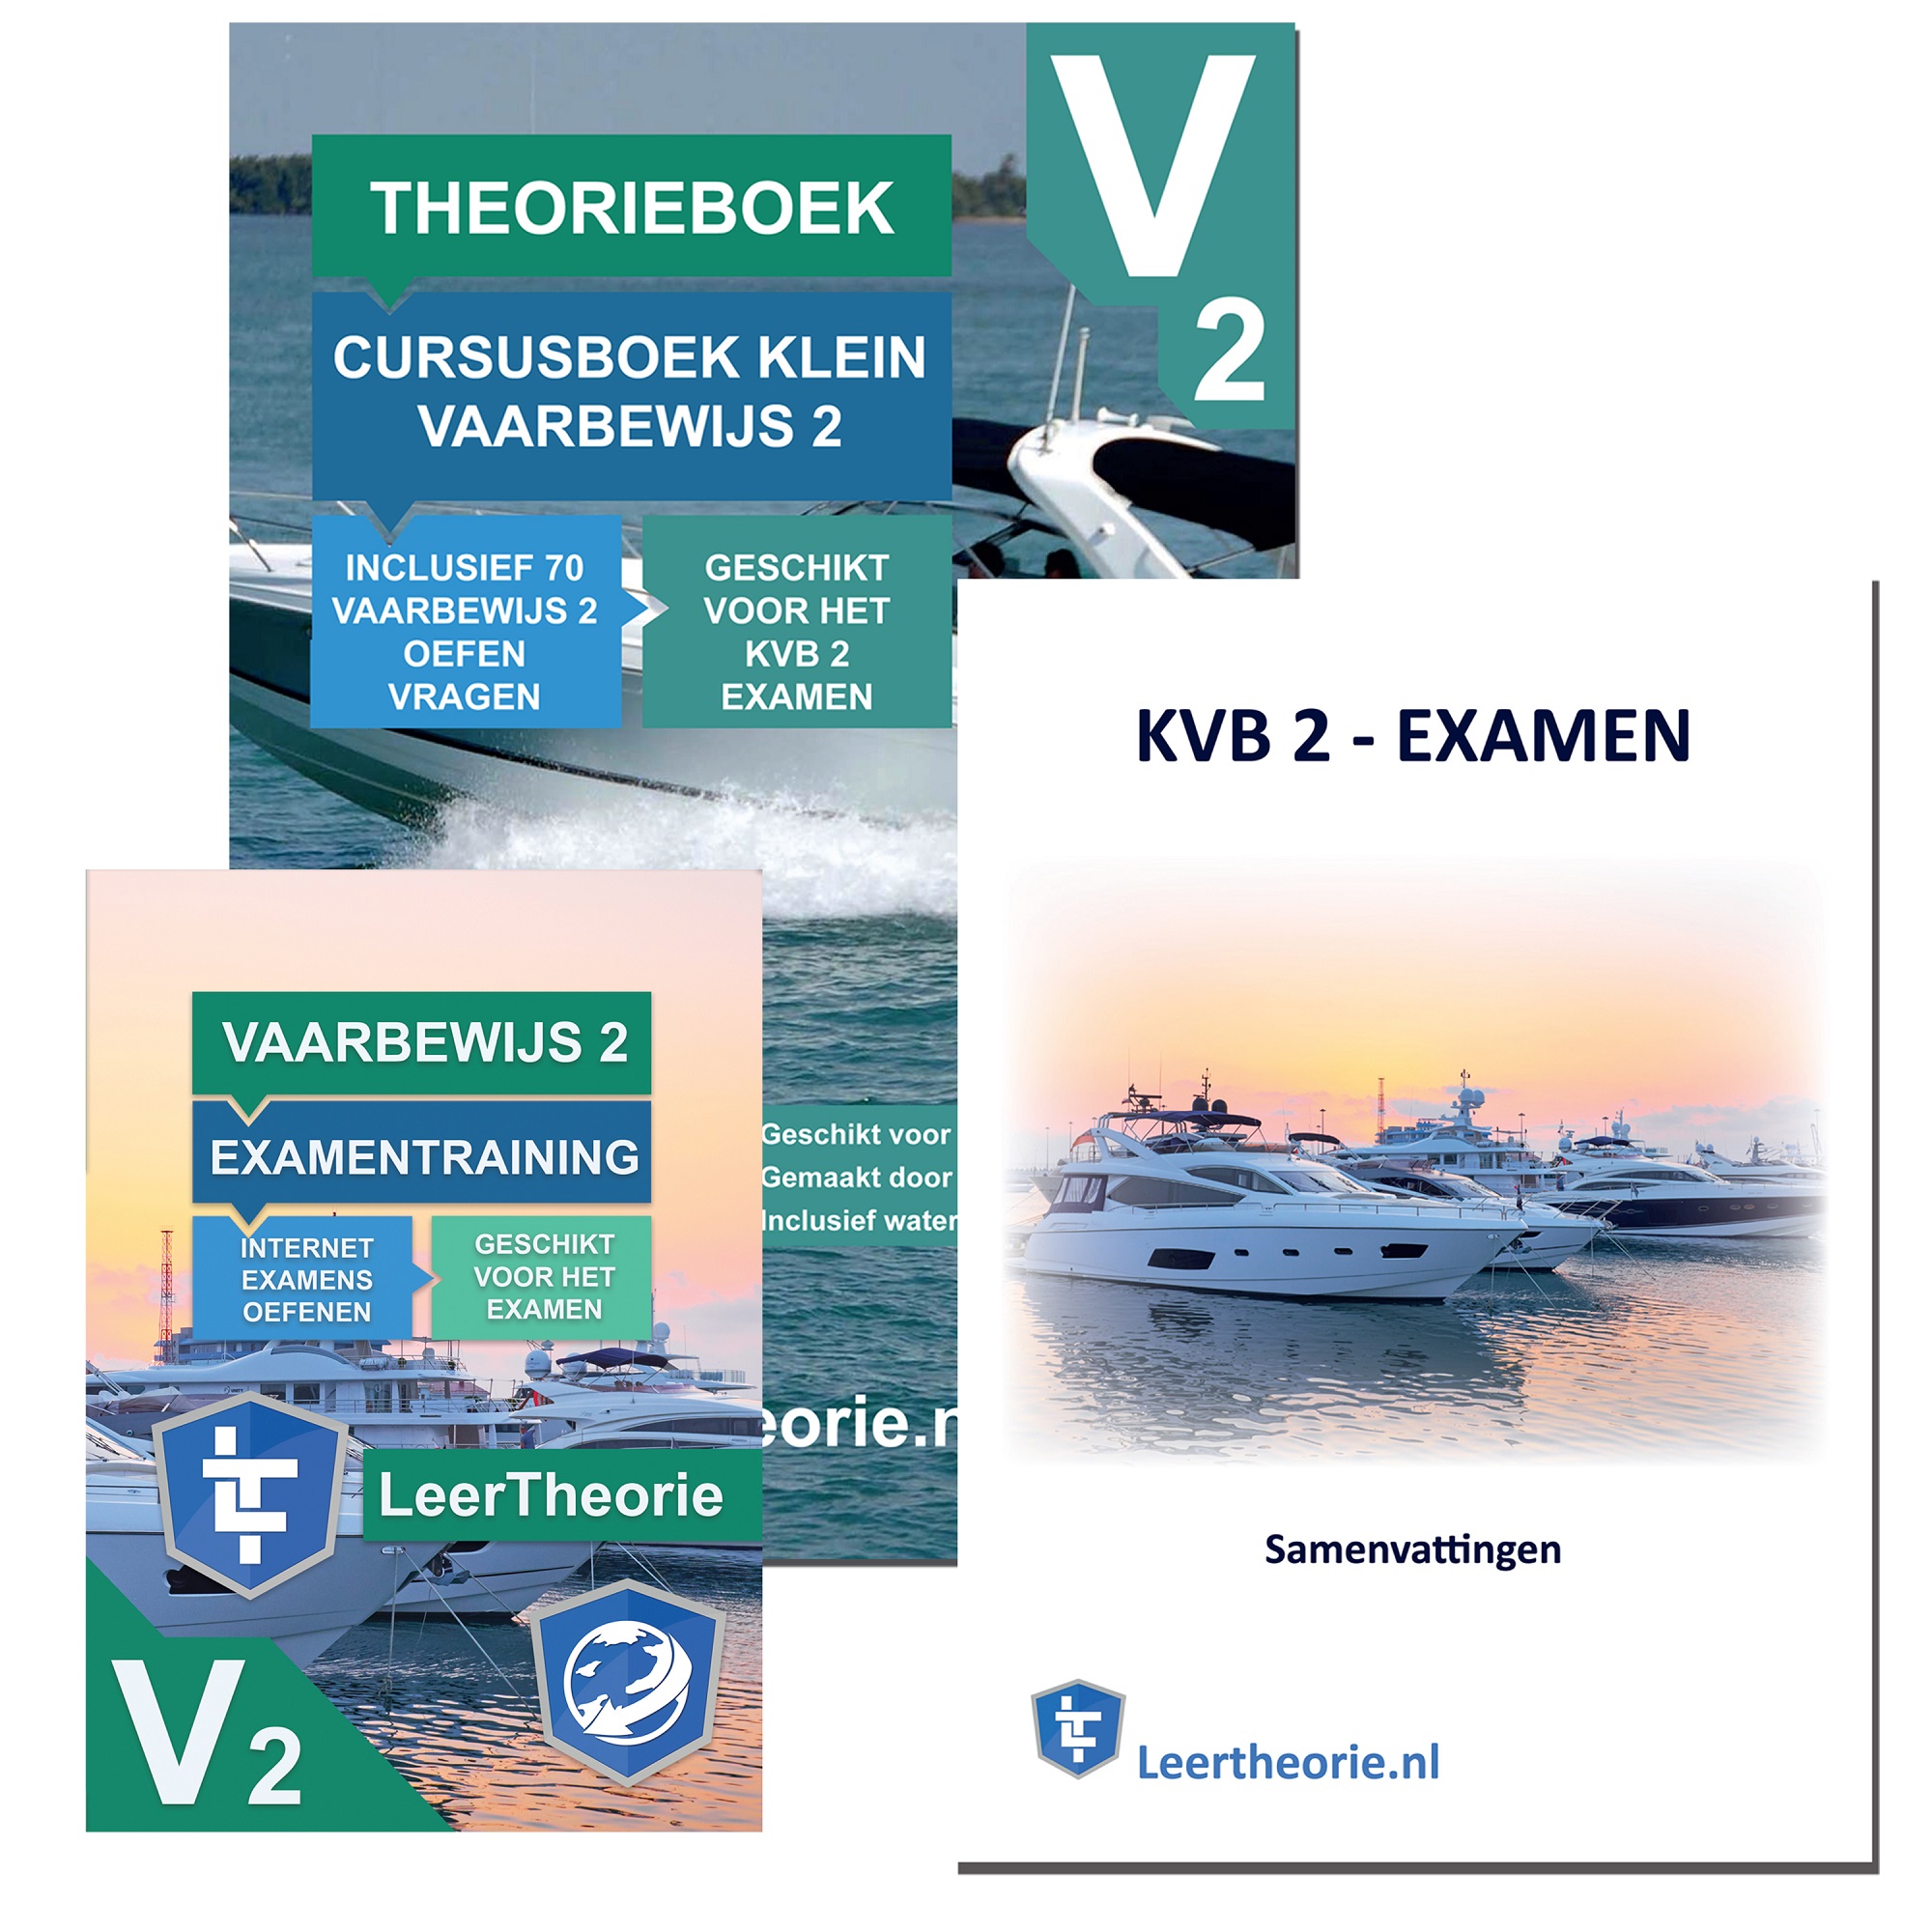 rijbewijstheorieboeken.nl - Theorieboek Cursusboek + Examentraining + Samenvatting - Klein Vaarbewijs 2 - Nederland - KVB 2 - KVB2 - LeerTheorie